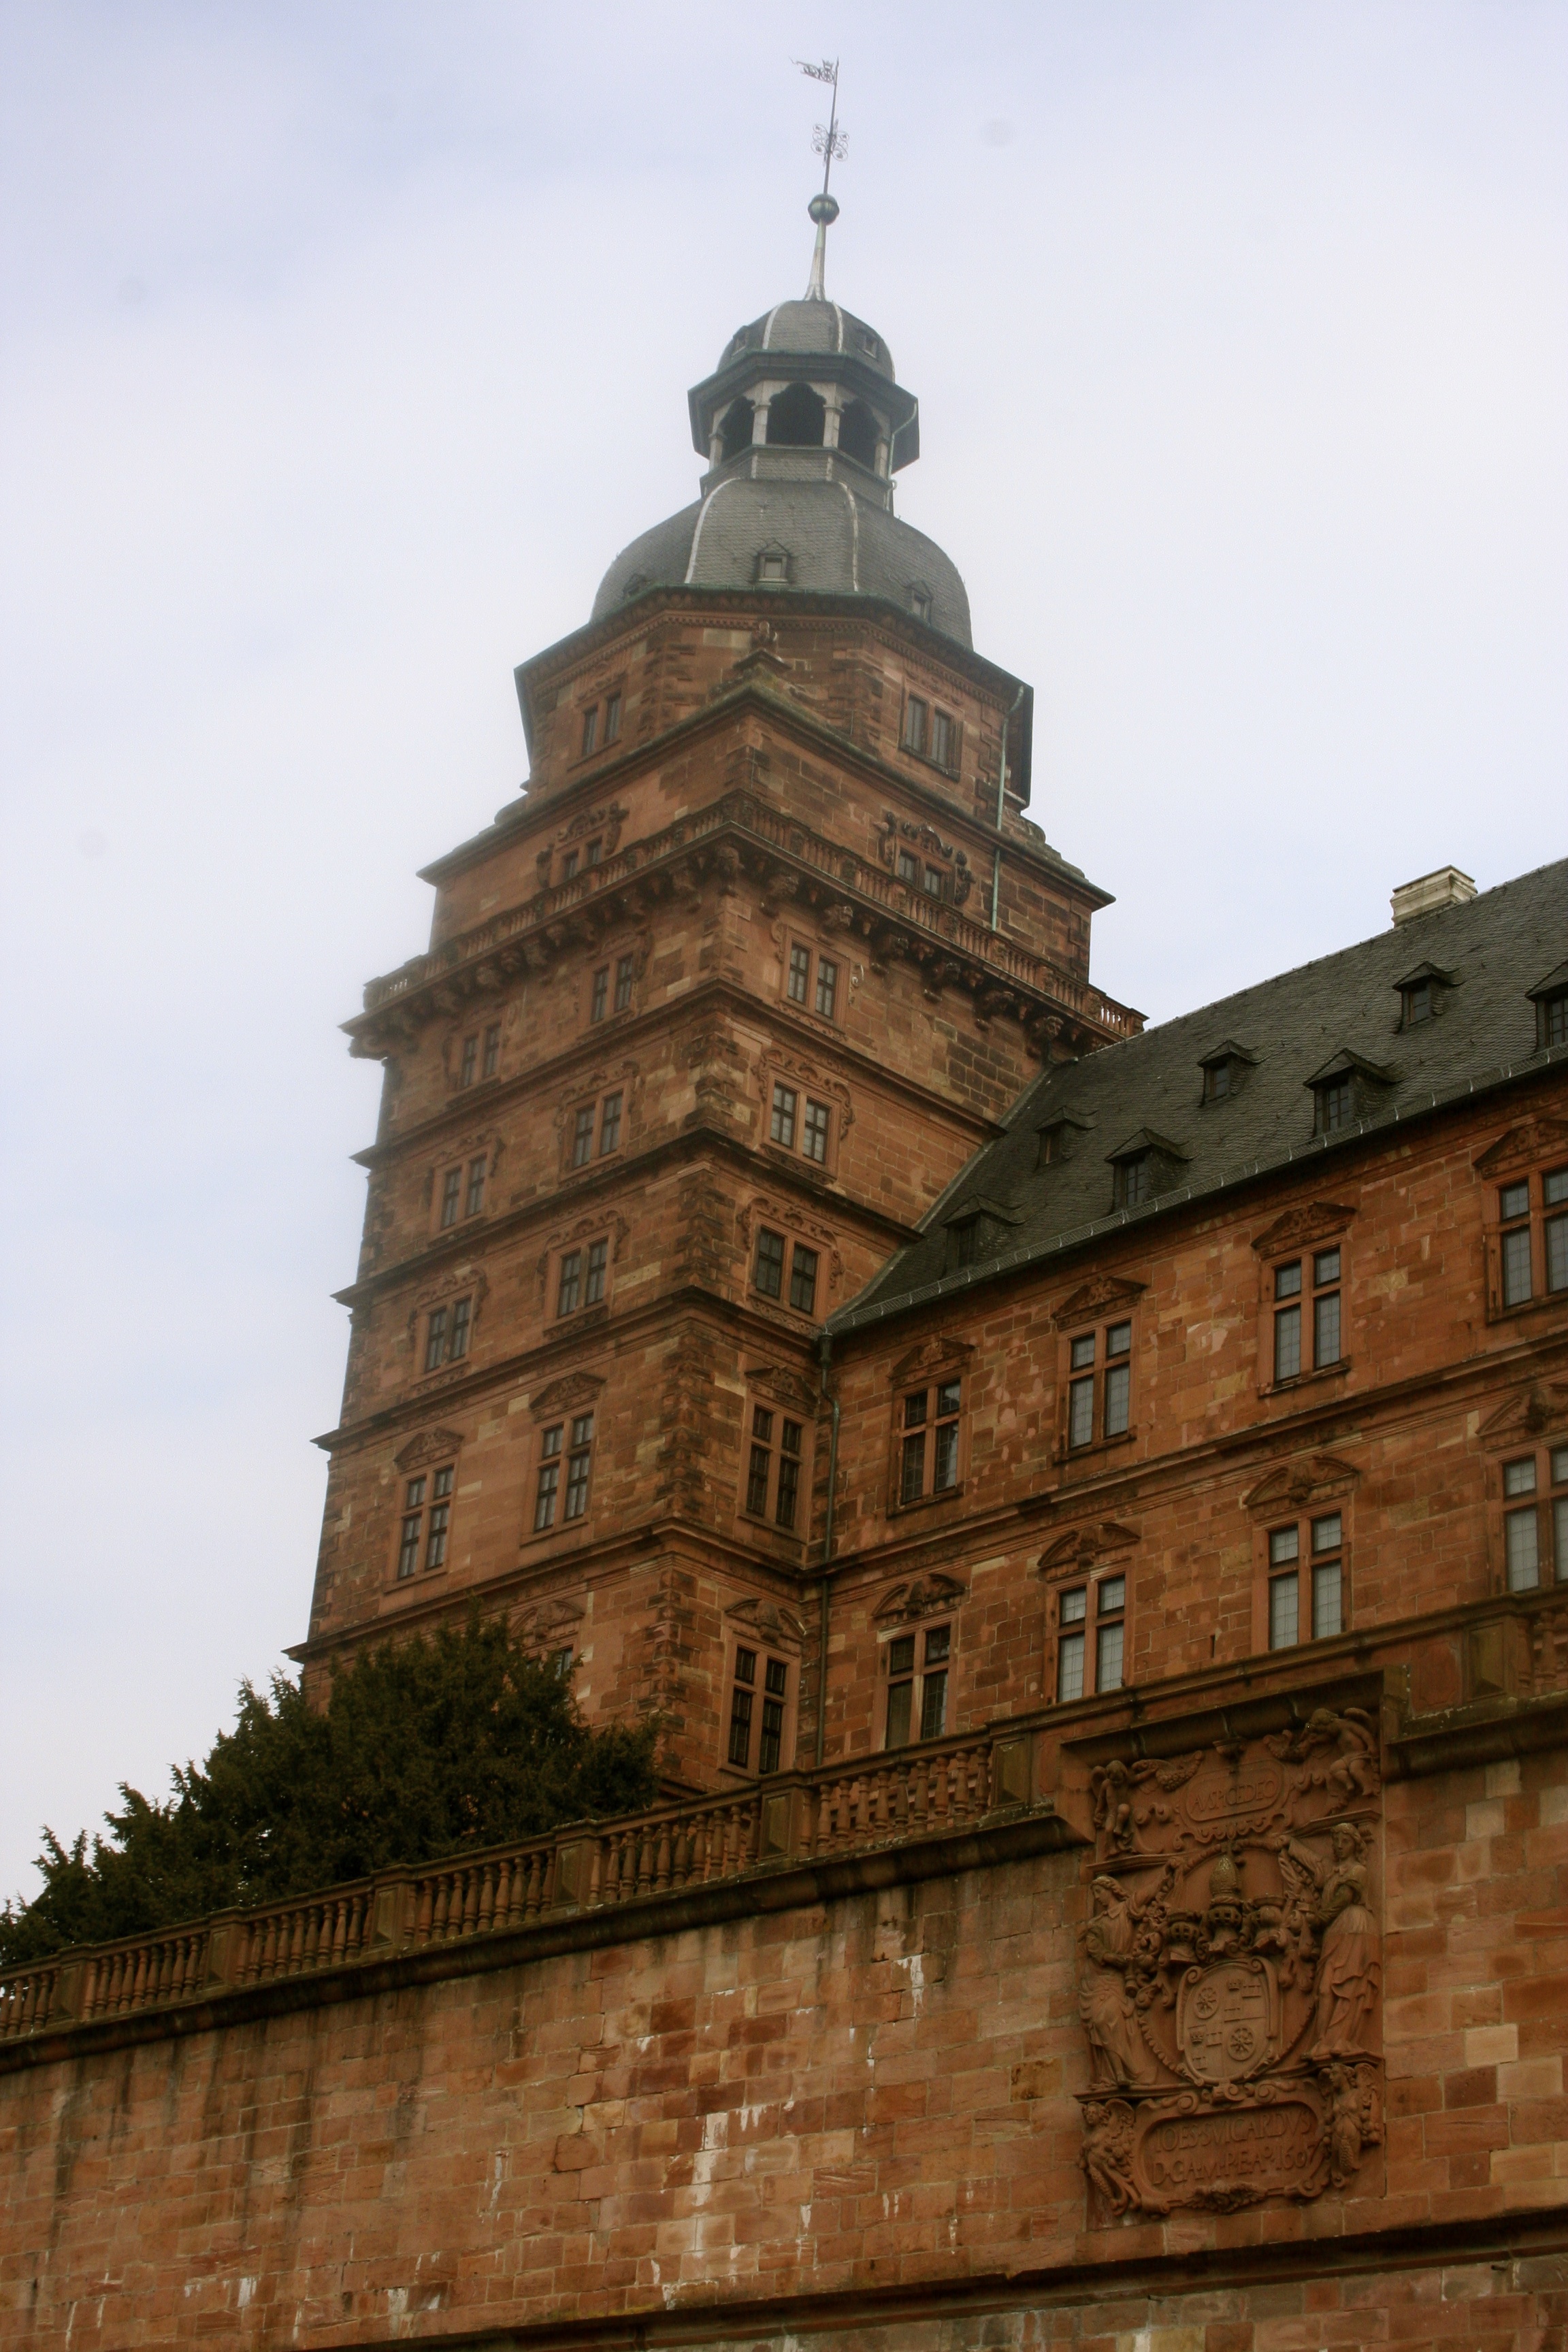 Schloss Johannisburg: Post-War Reconstruction at its Finest